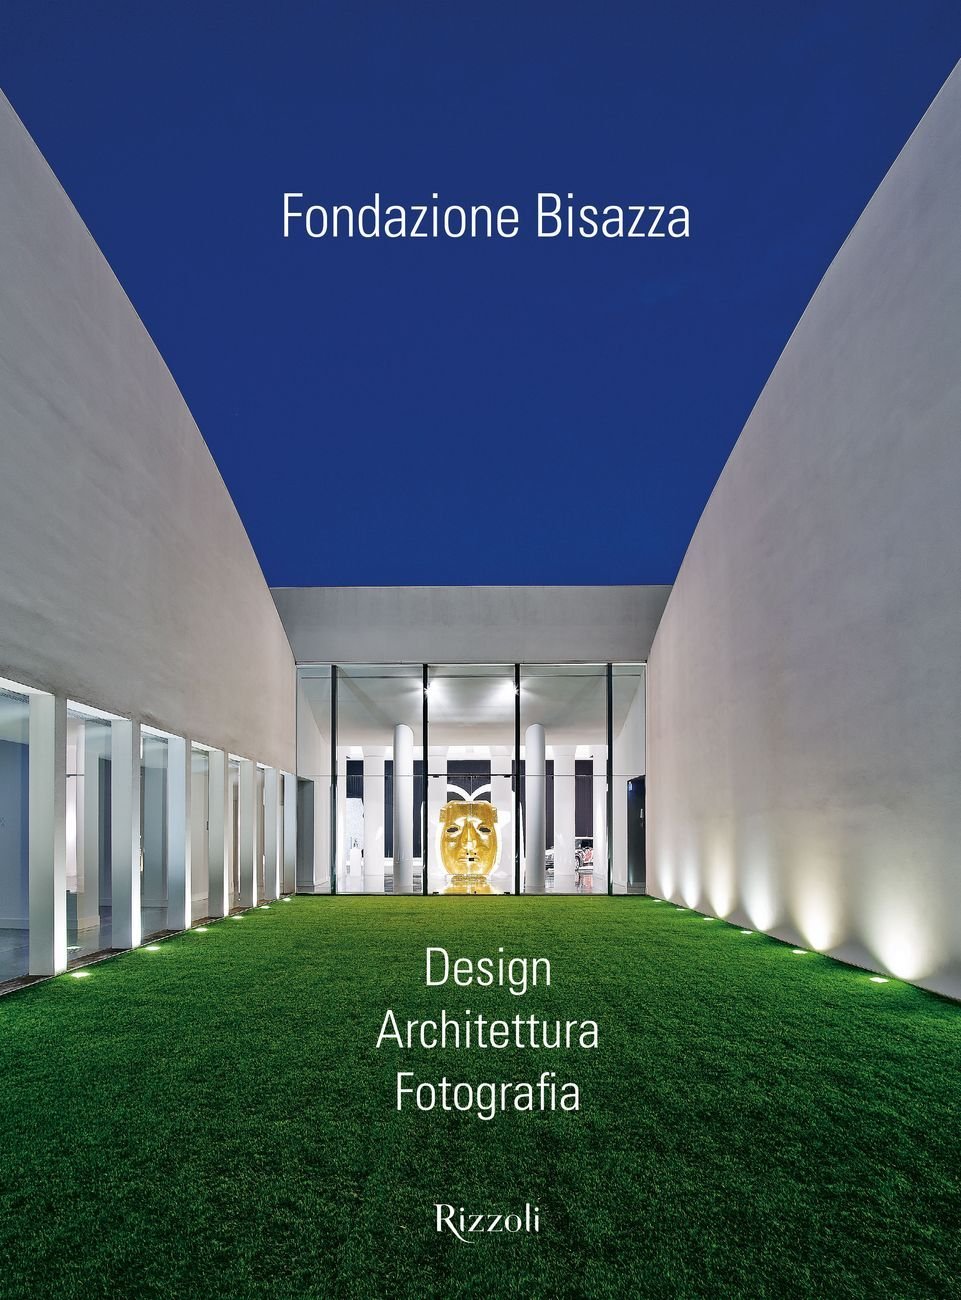 Ian Phillips – Fondazione Bisazza (Rizzoli, Milano 2019)